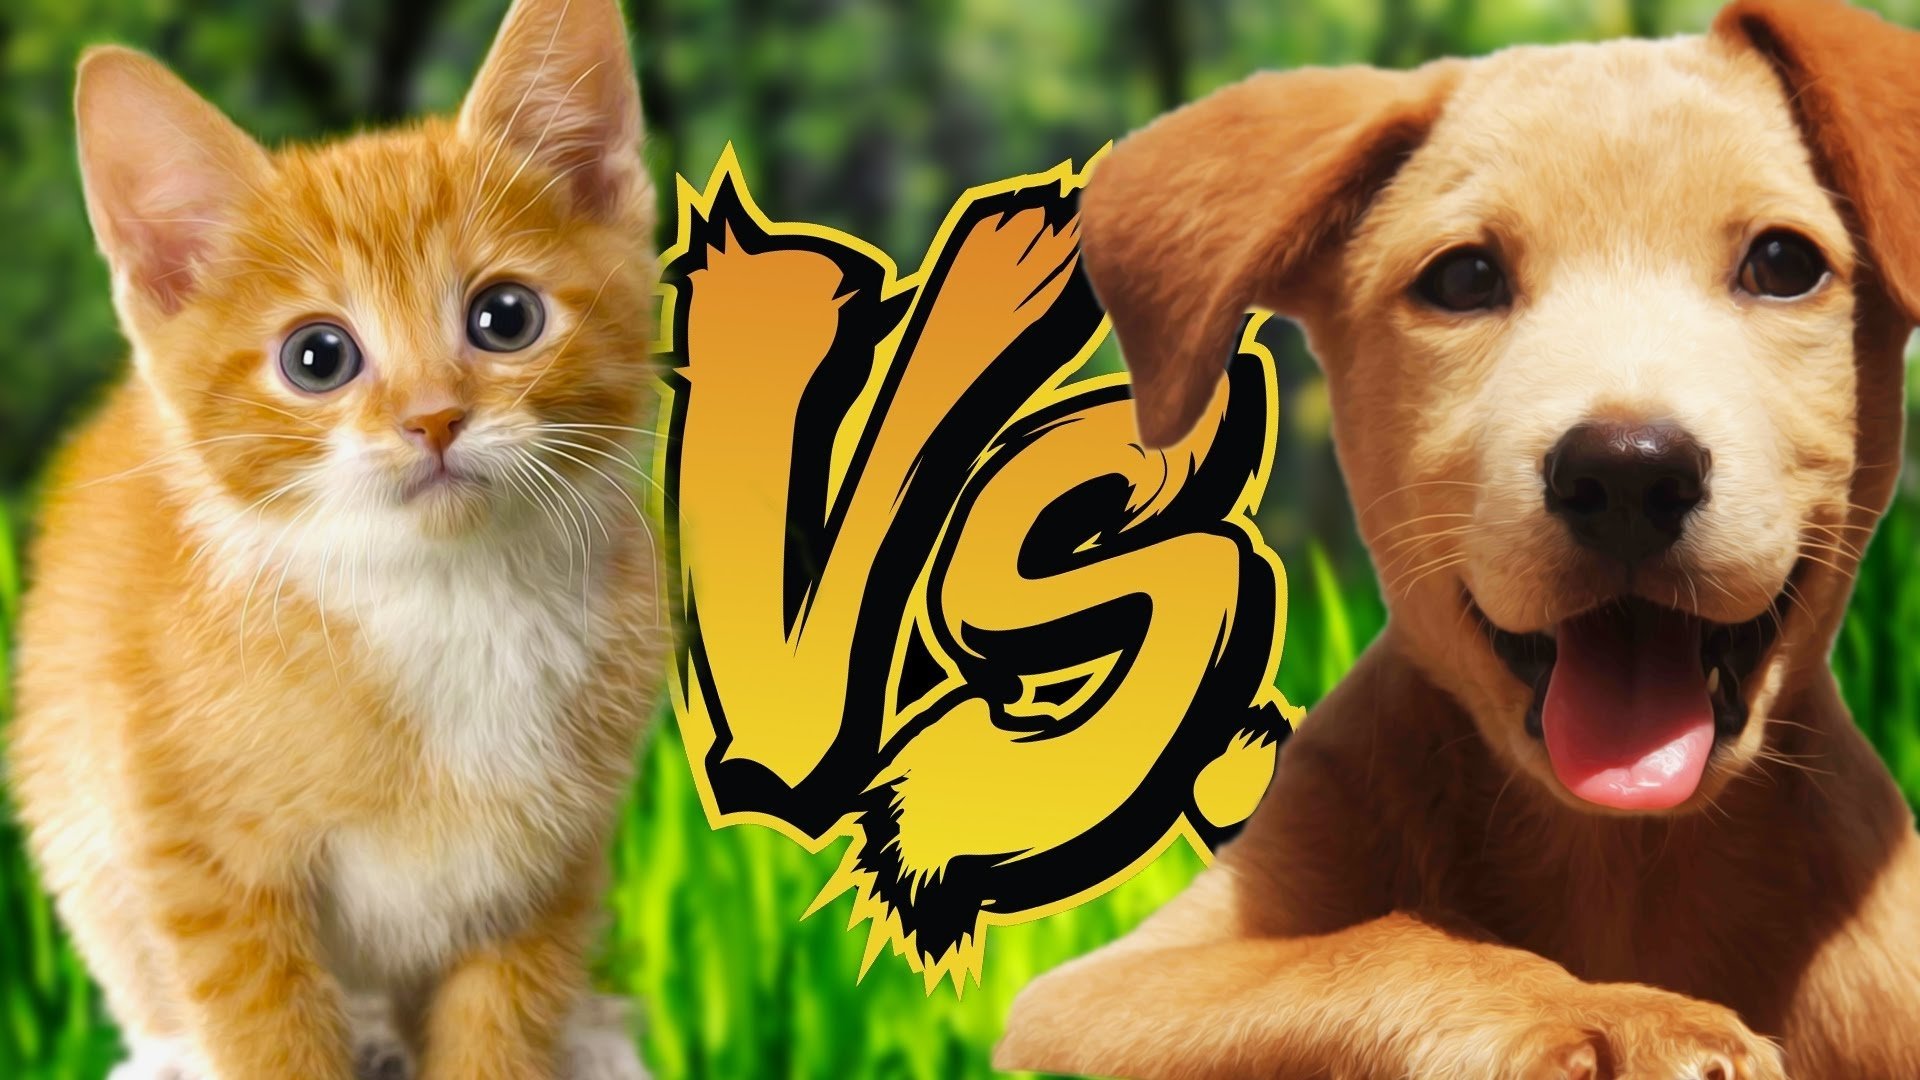 Лучшие видео про животных. Собачки и кошечки. Кошка vs собака. Картинки кошек и собак. Киски и собачки.